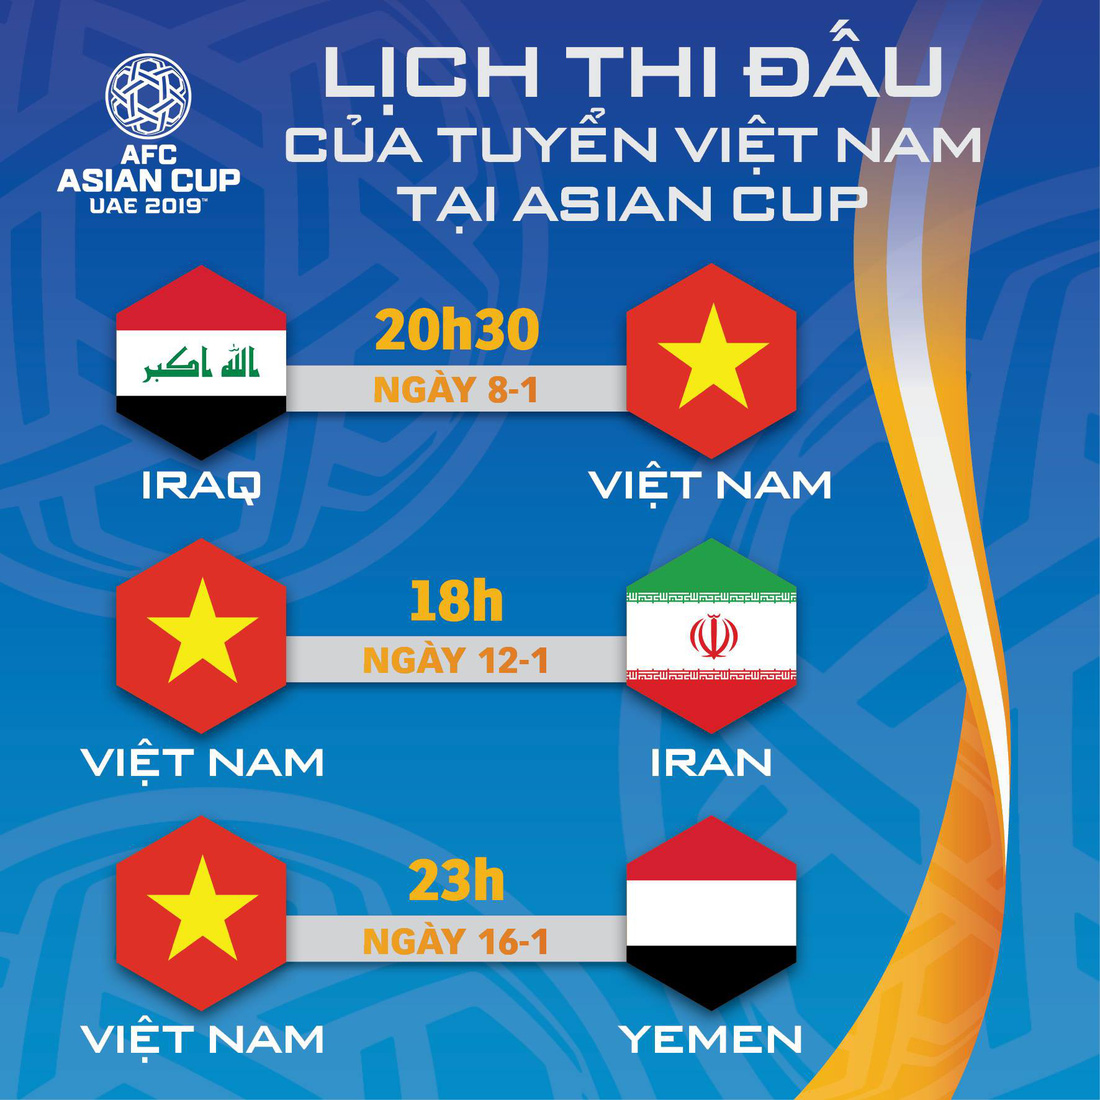 Lịch thi đấu của tuyển Việt Nam tại Asian Cup 2019 - Ảnh 1.